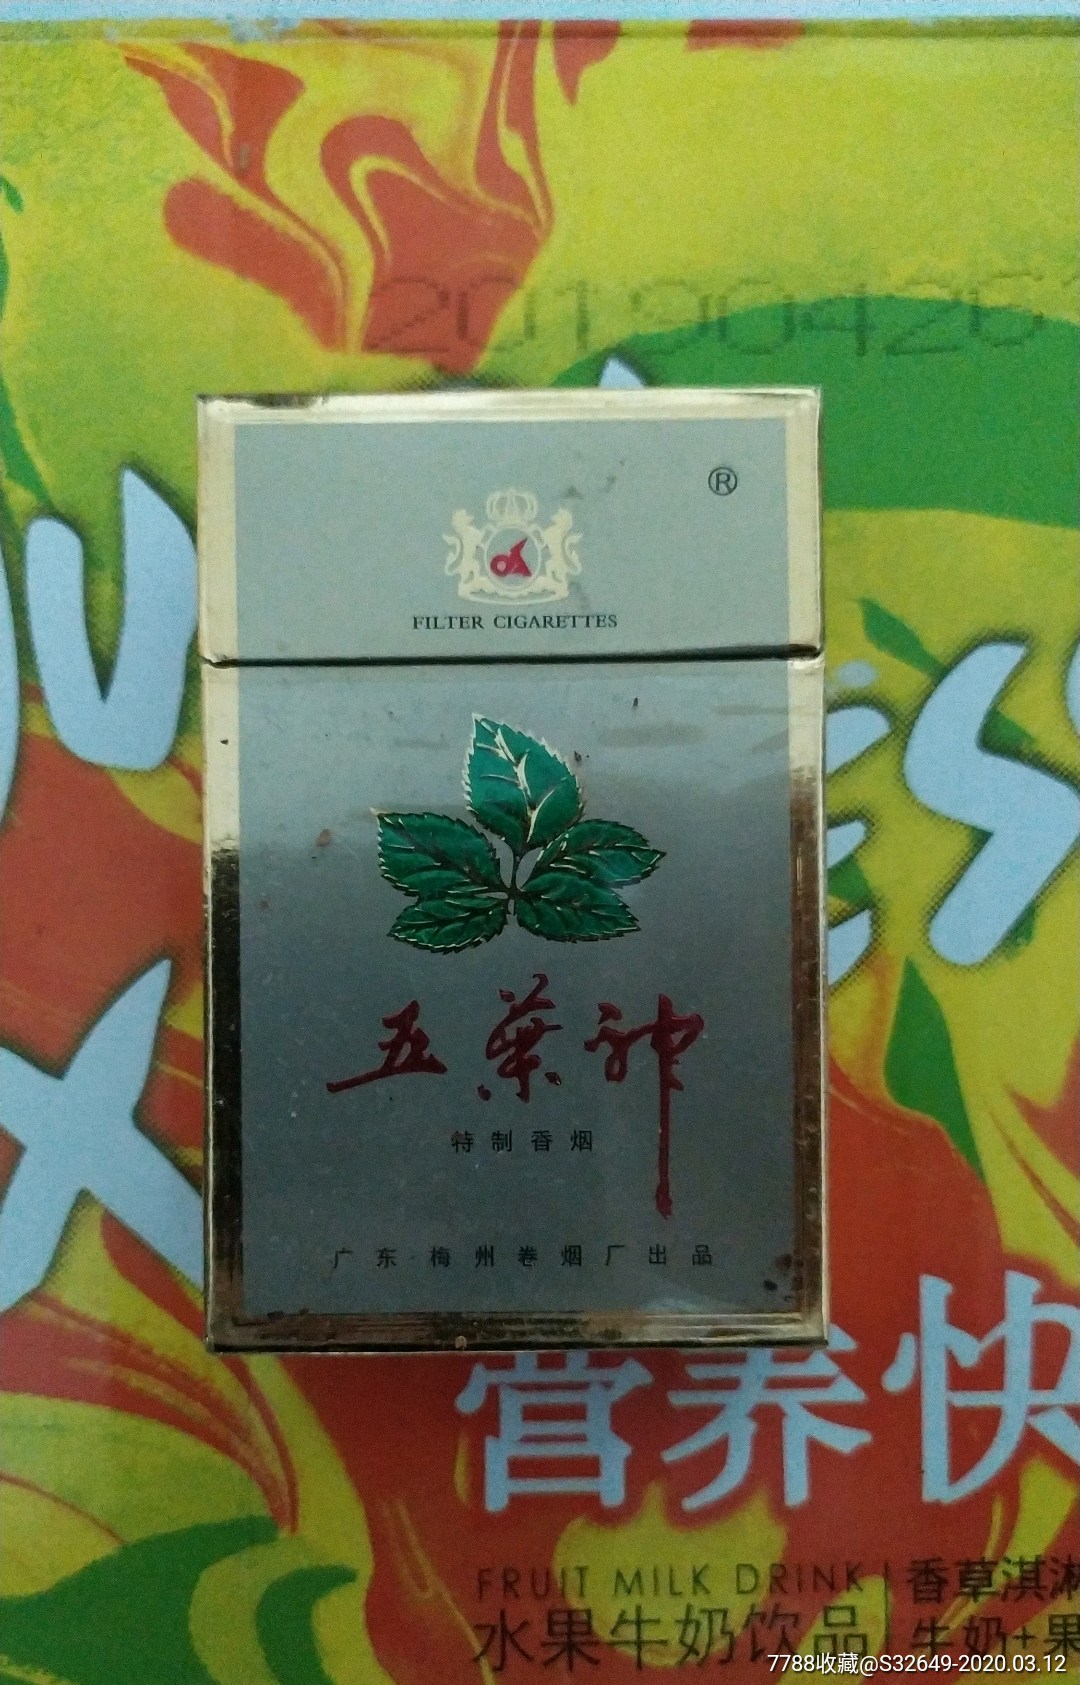 五叶神香烟 1999图片